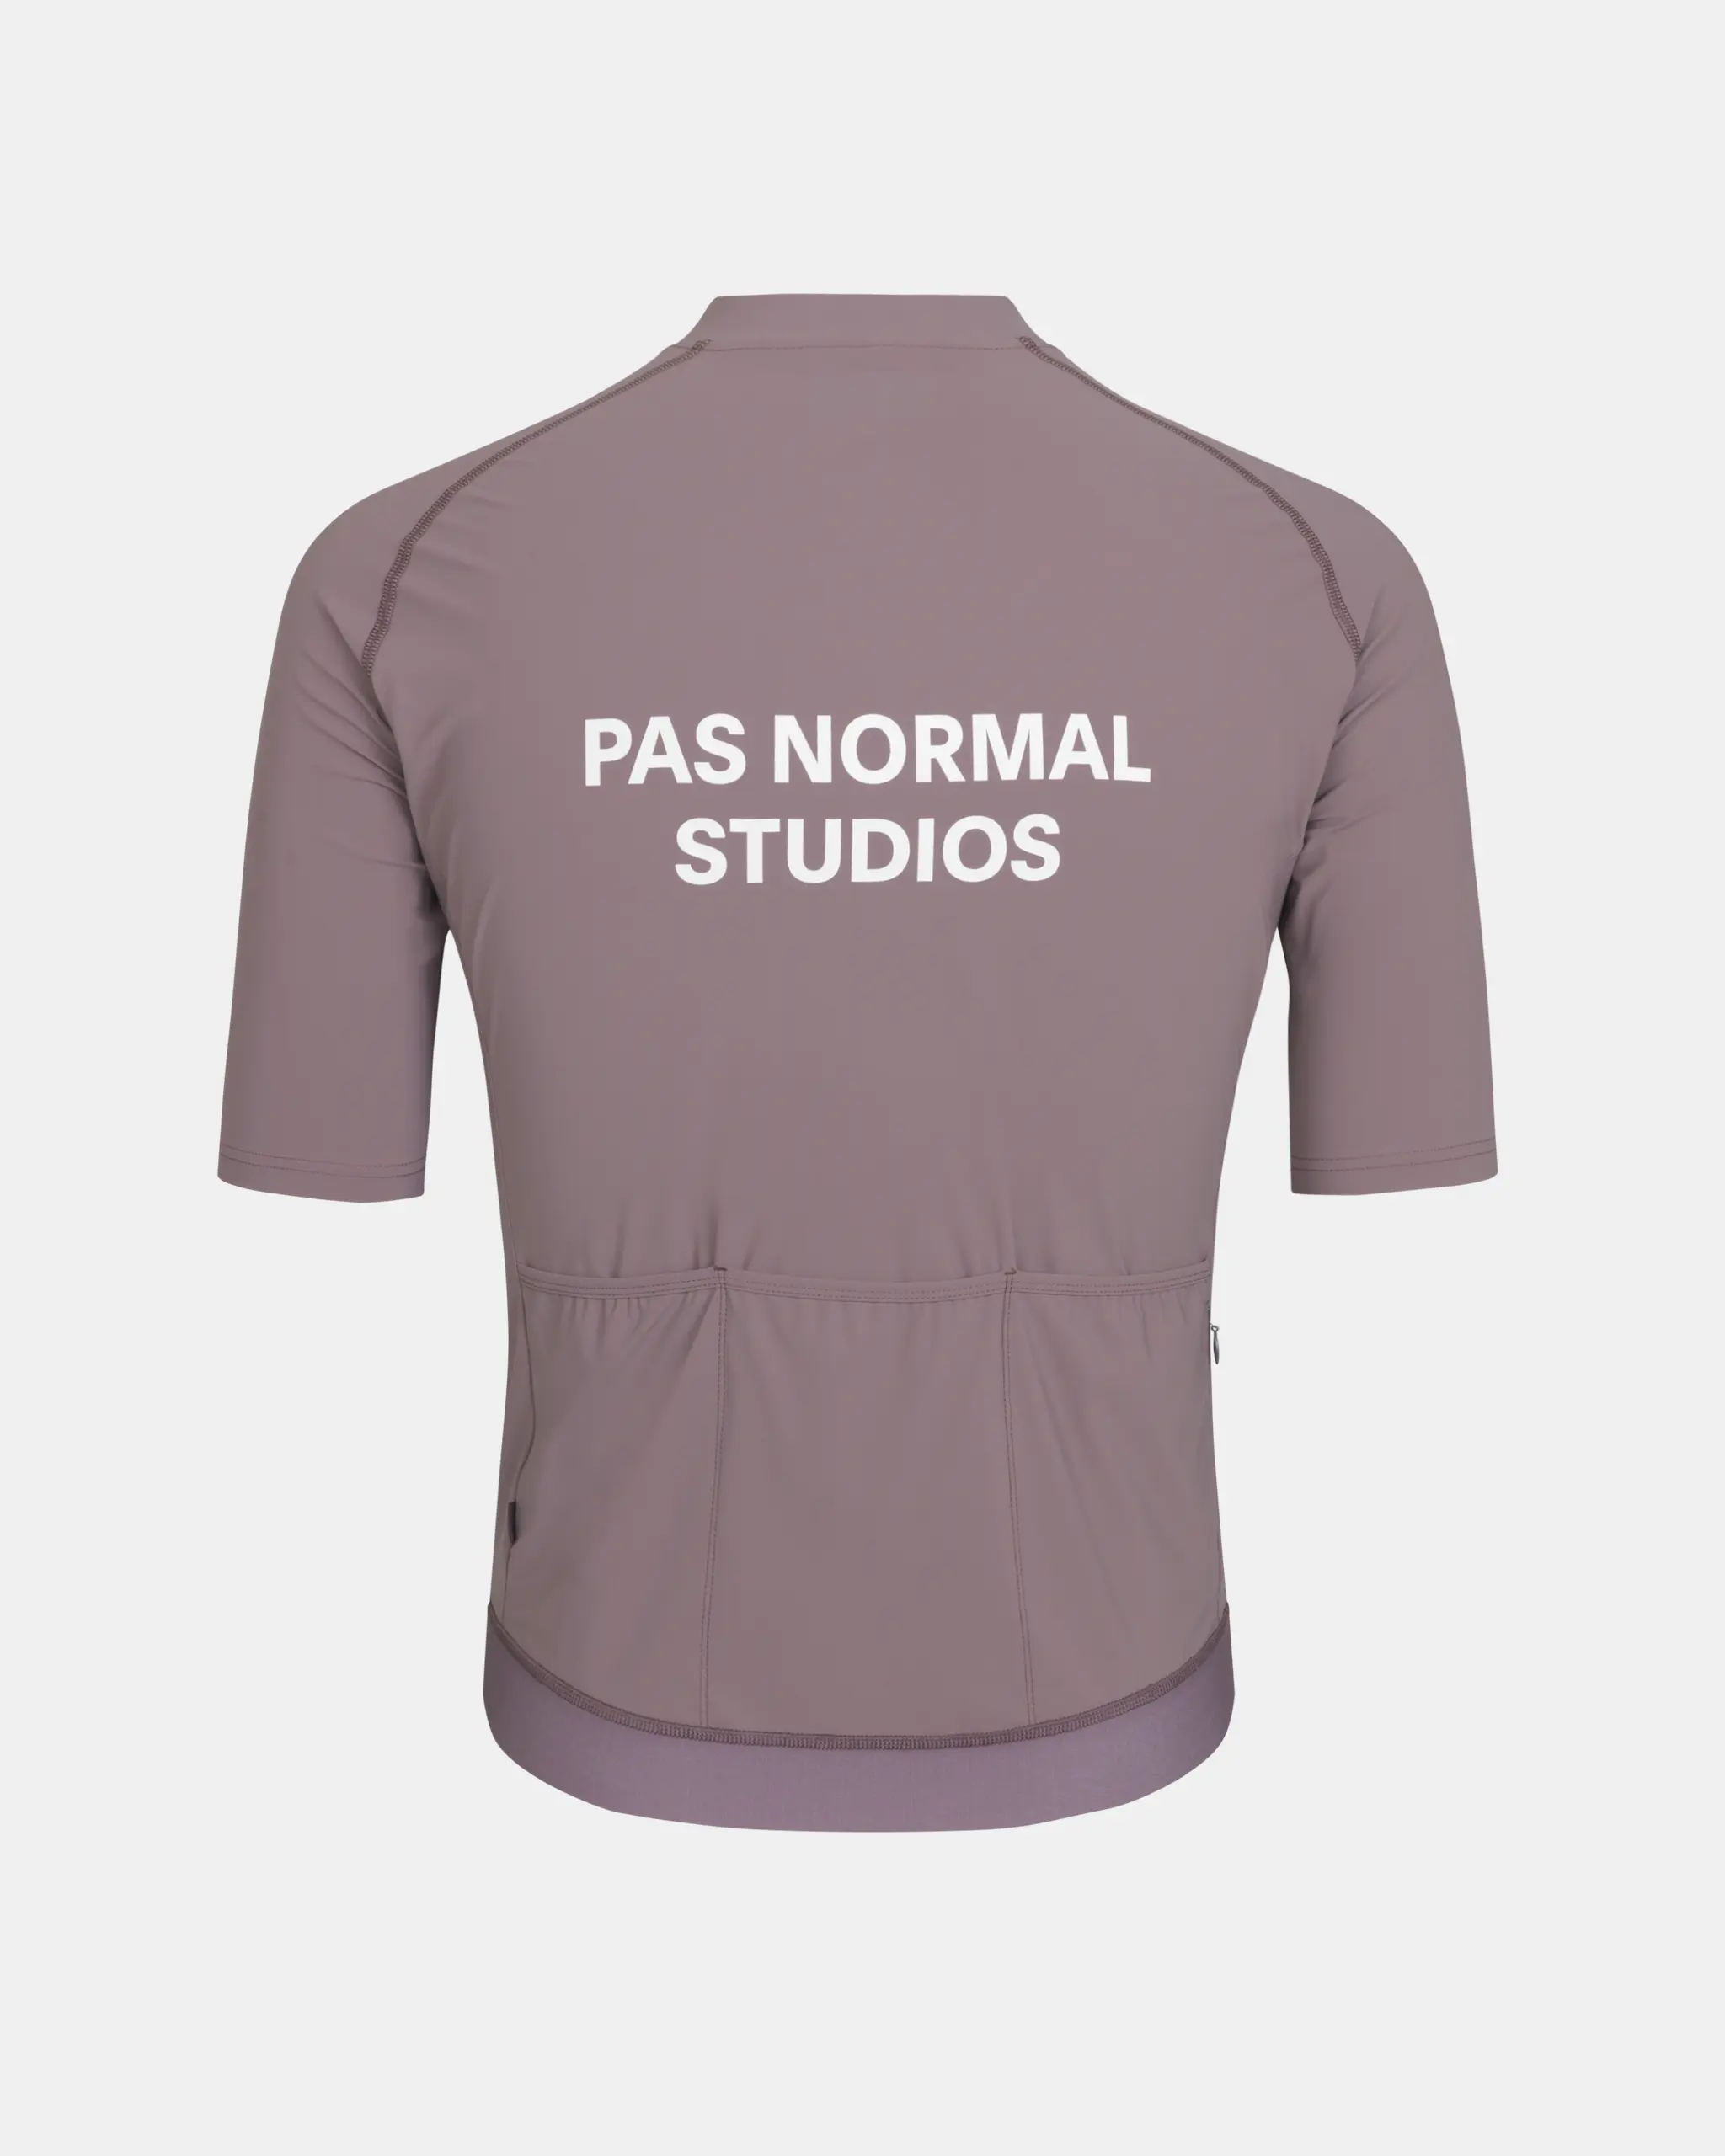 Men's Essential Jersey | Pas Normal Studios